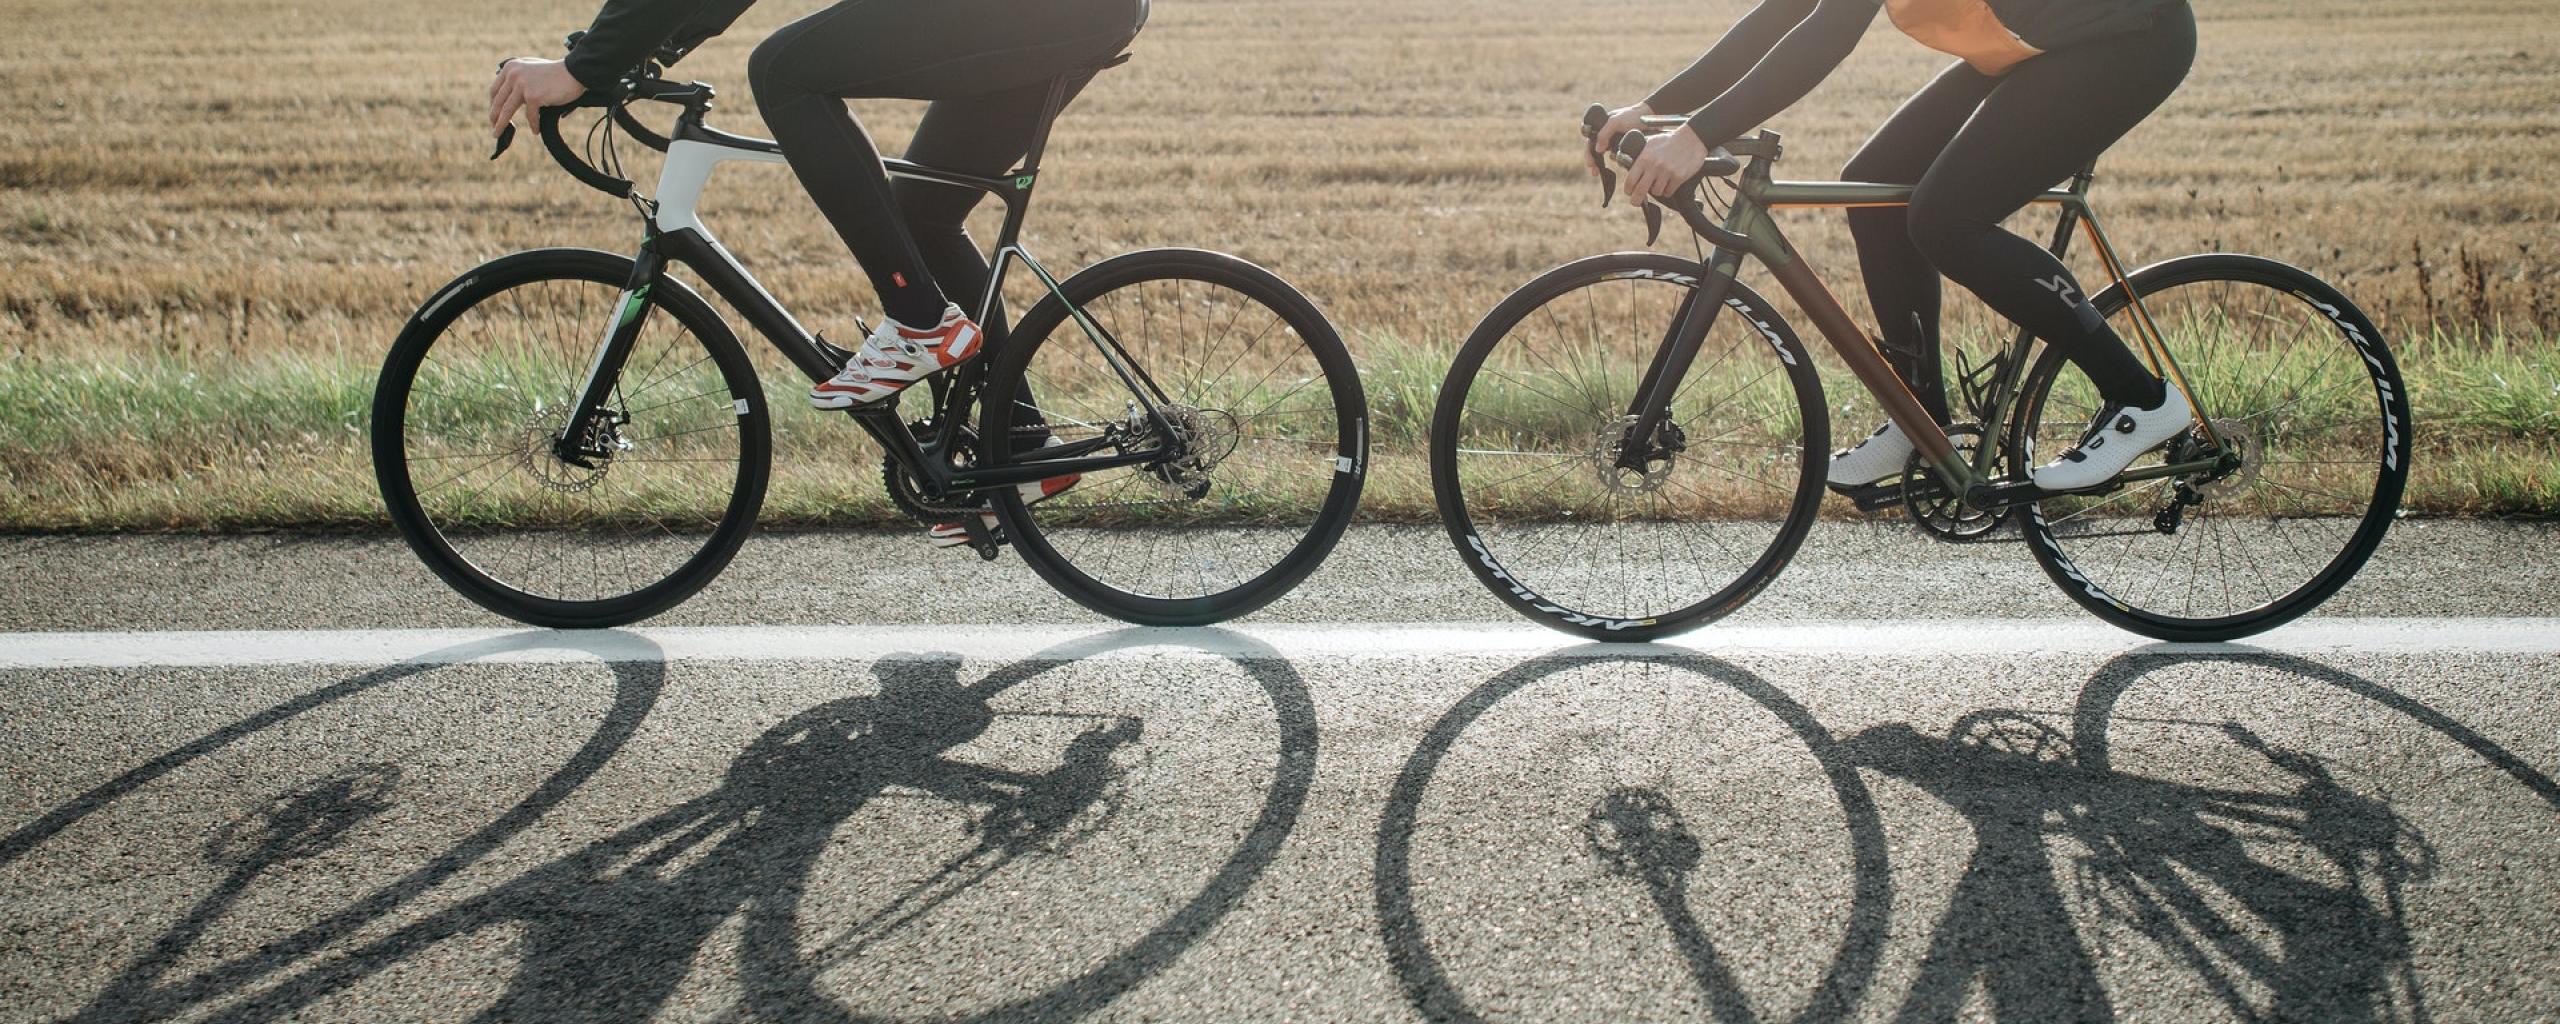 Twee mensen op een wielrenfiets. De mensen fietsen achter elkaar en we zien hen allebei van de zijkant. Ze fietsen op een weg en op de weg is de schaduw van de fietsen zichtbaar. Op de achtergrond zien we een velt.